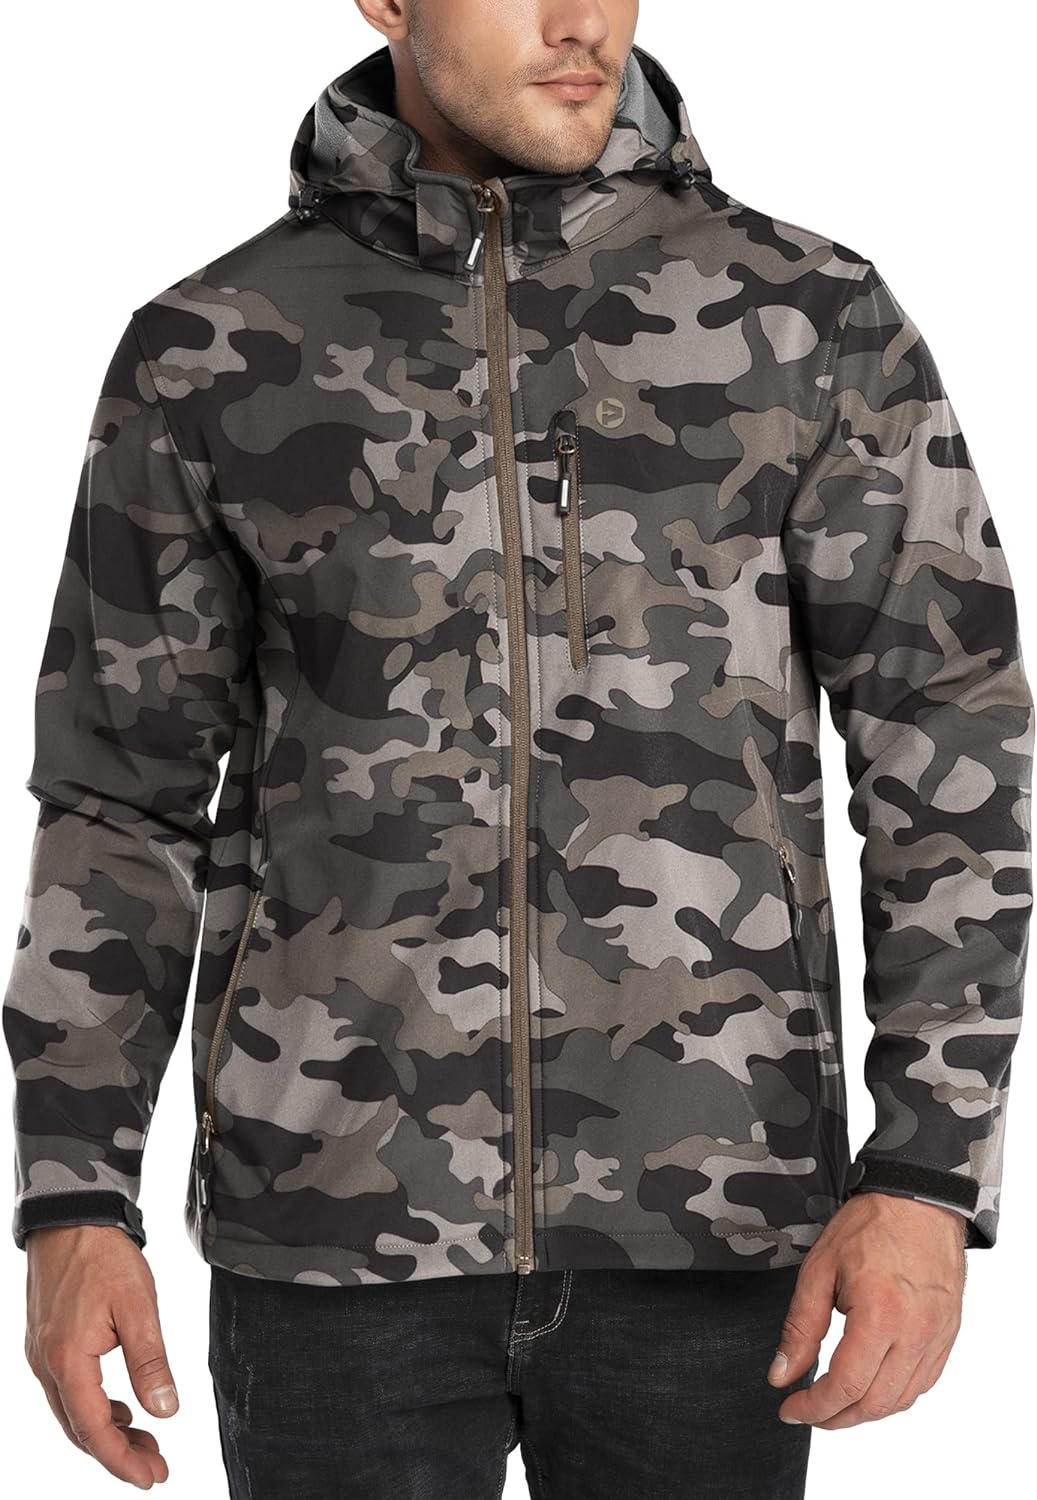 Outdoor Ventures Men's Lightweight Softshell Jacket Fleece Lined Hooded  Water Resistant Winter Hiking Windbreaker Jackets